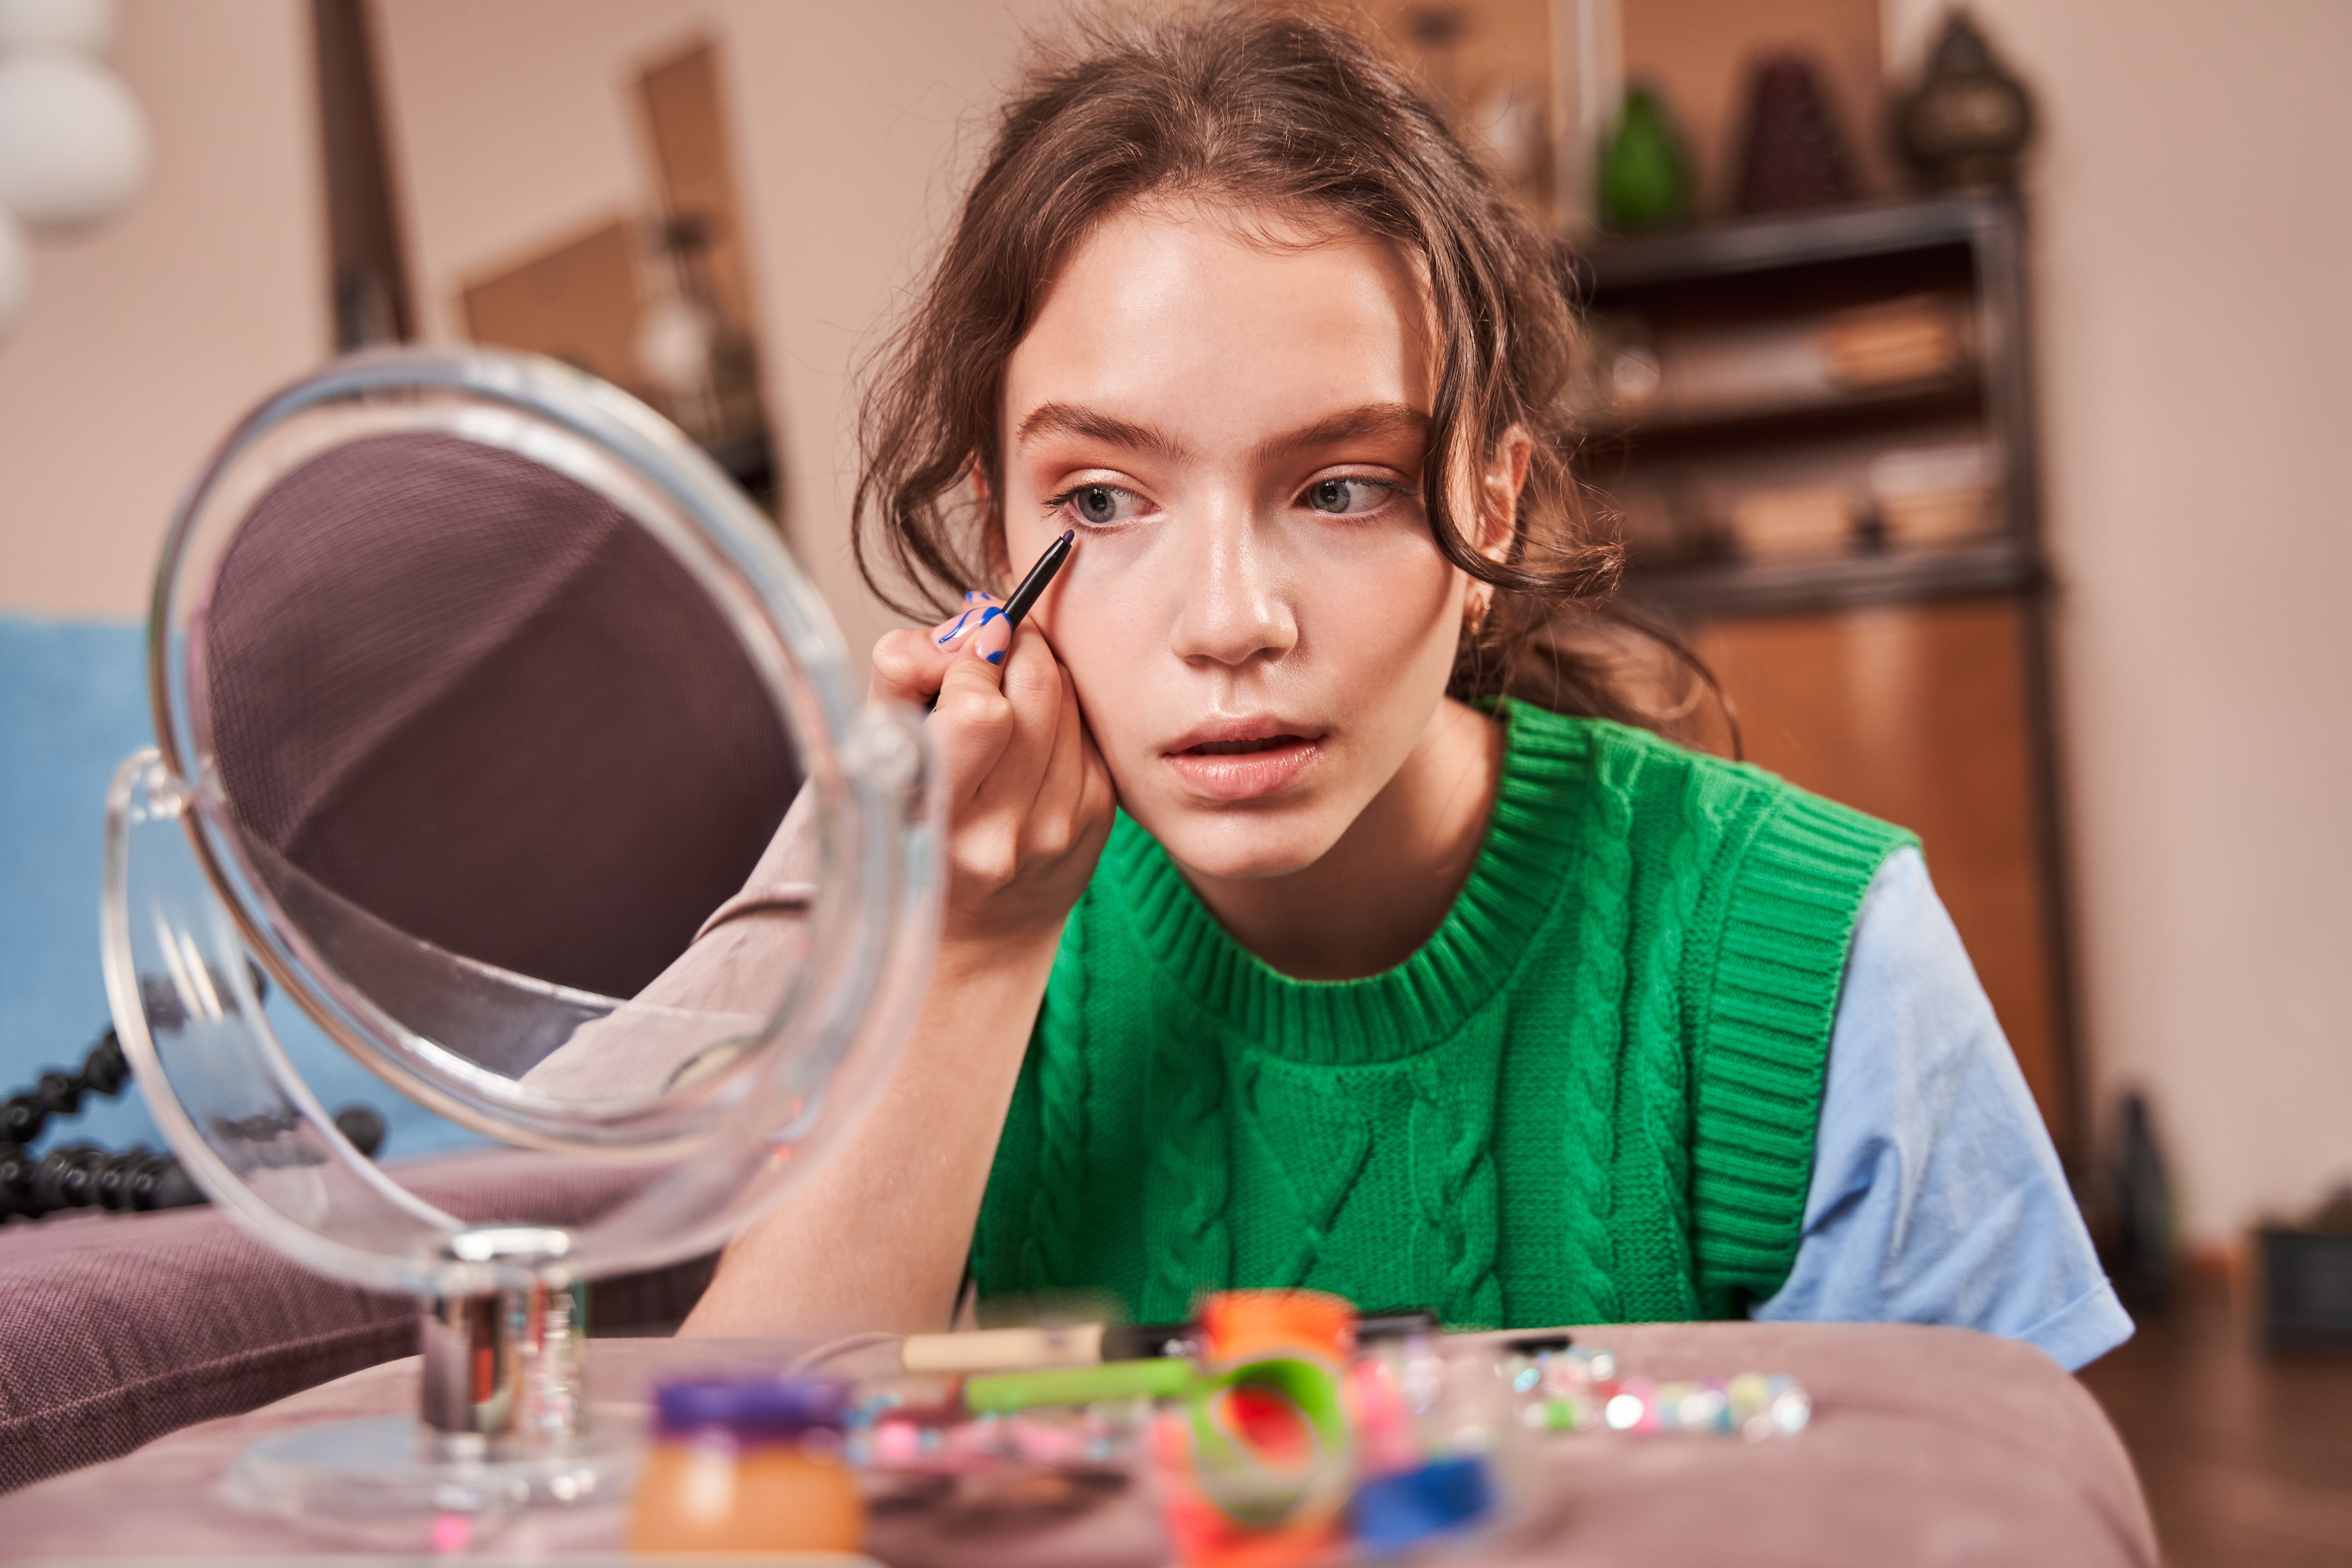 Une adolescente se maquille en se regardant dans le miroir | Source : Shutterstock